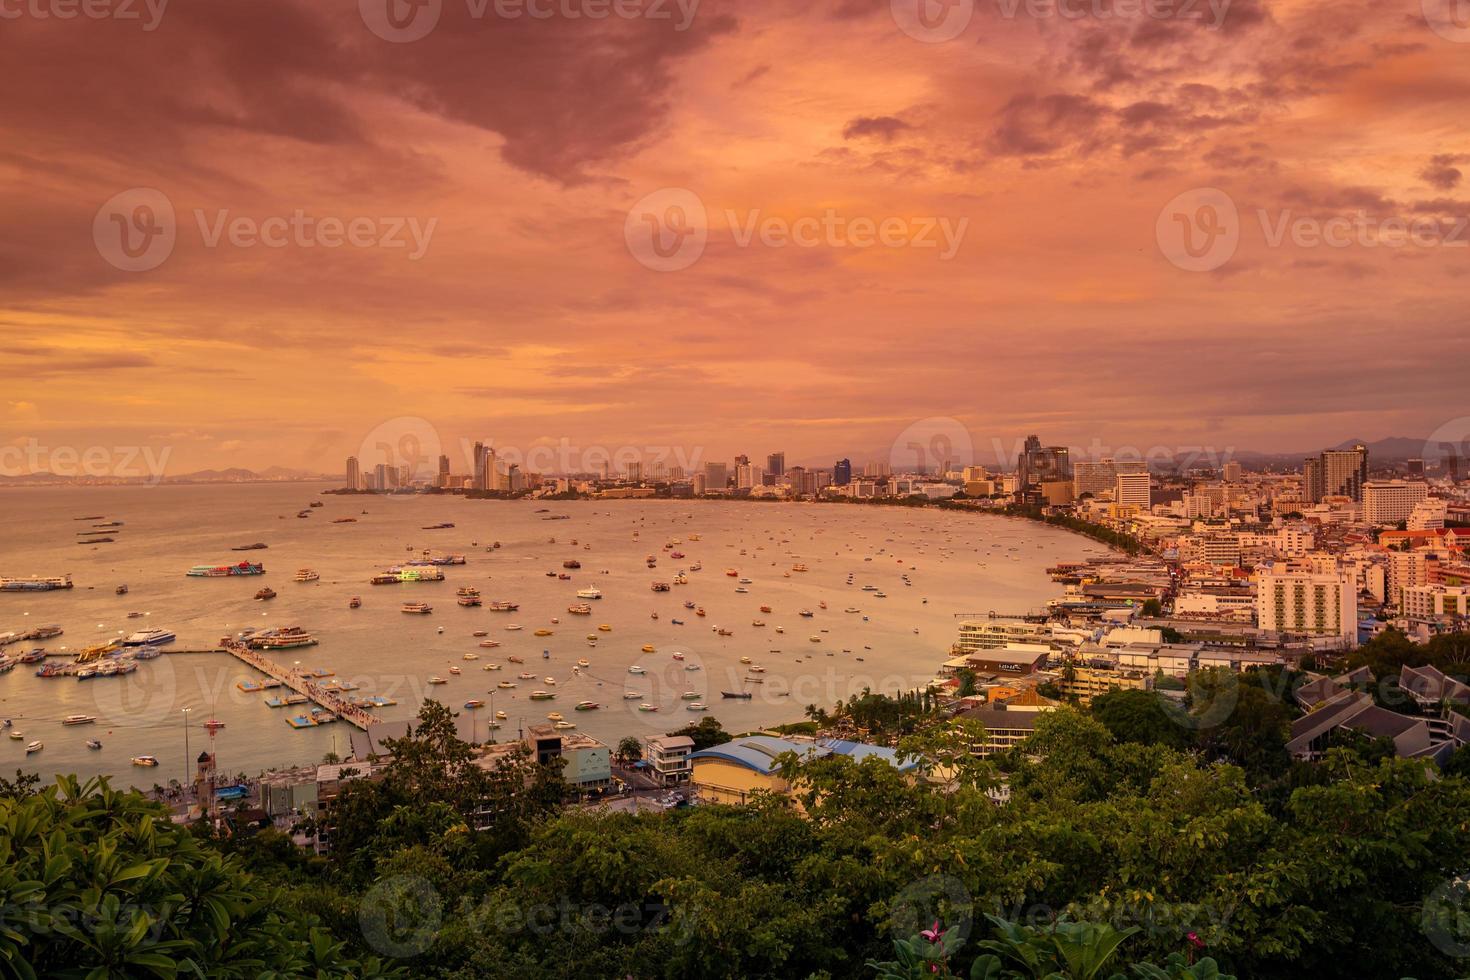 utsikt från pattaya city utsiktspunkt i kvällssolnedgången chonburi thailand. foto